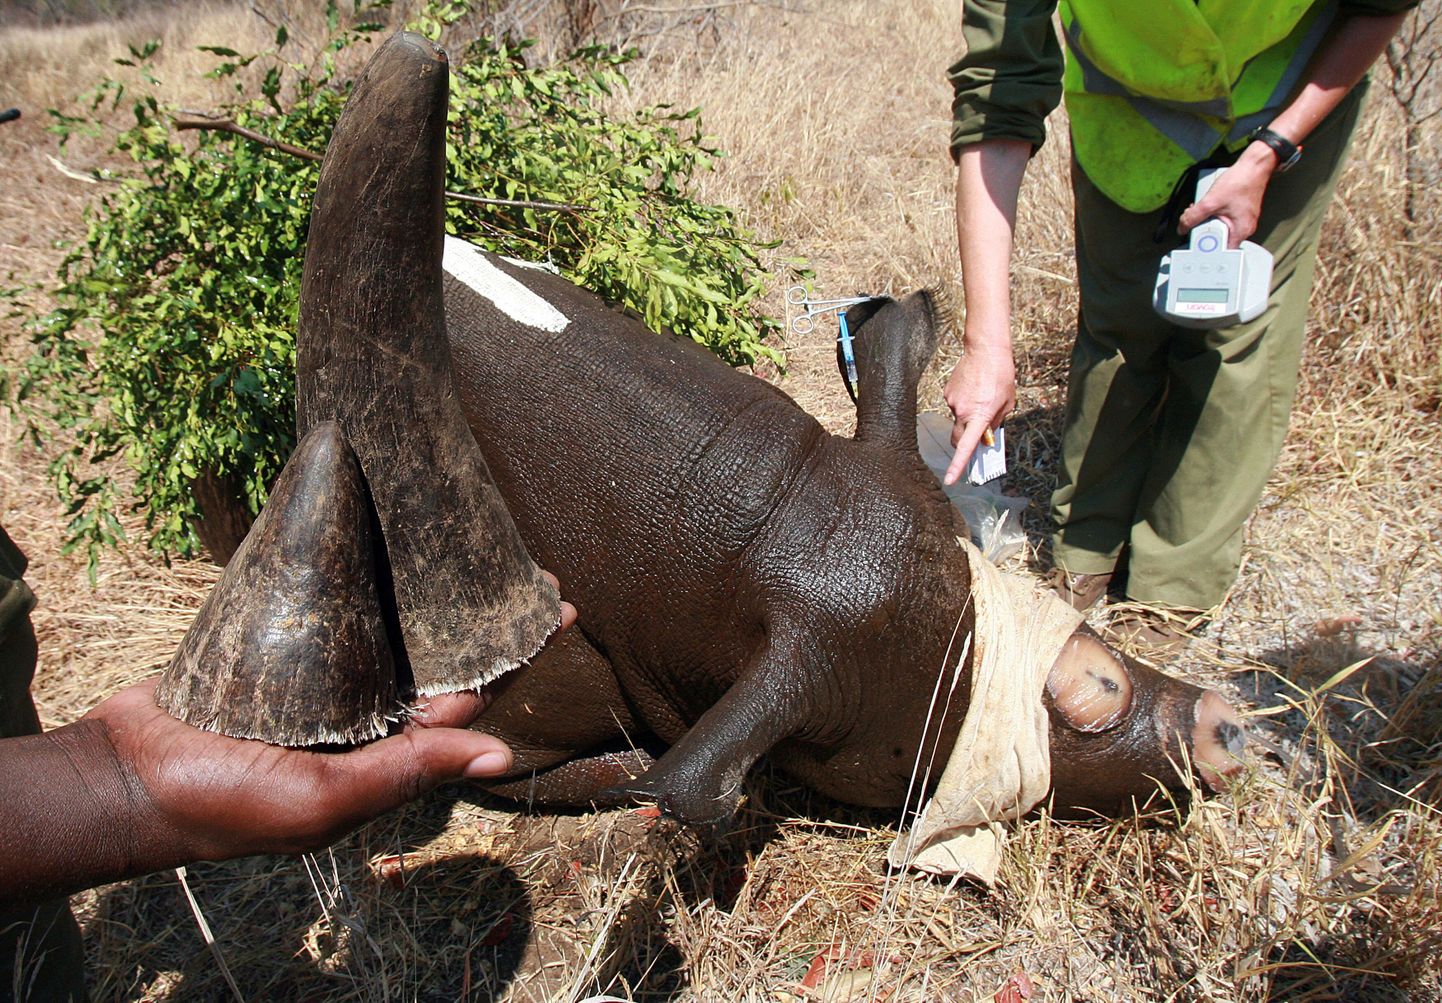 Maailma Looduse Fondi töötaja näitab väljasuremisohus must-ninasarviku sarvi, mille salakütid on loomalt ära lõiganud.